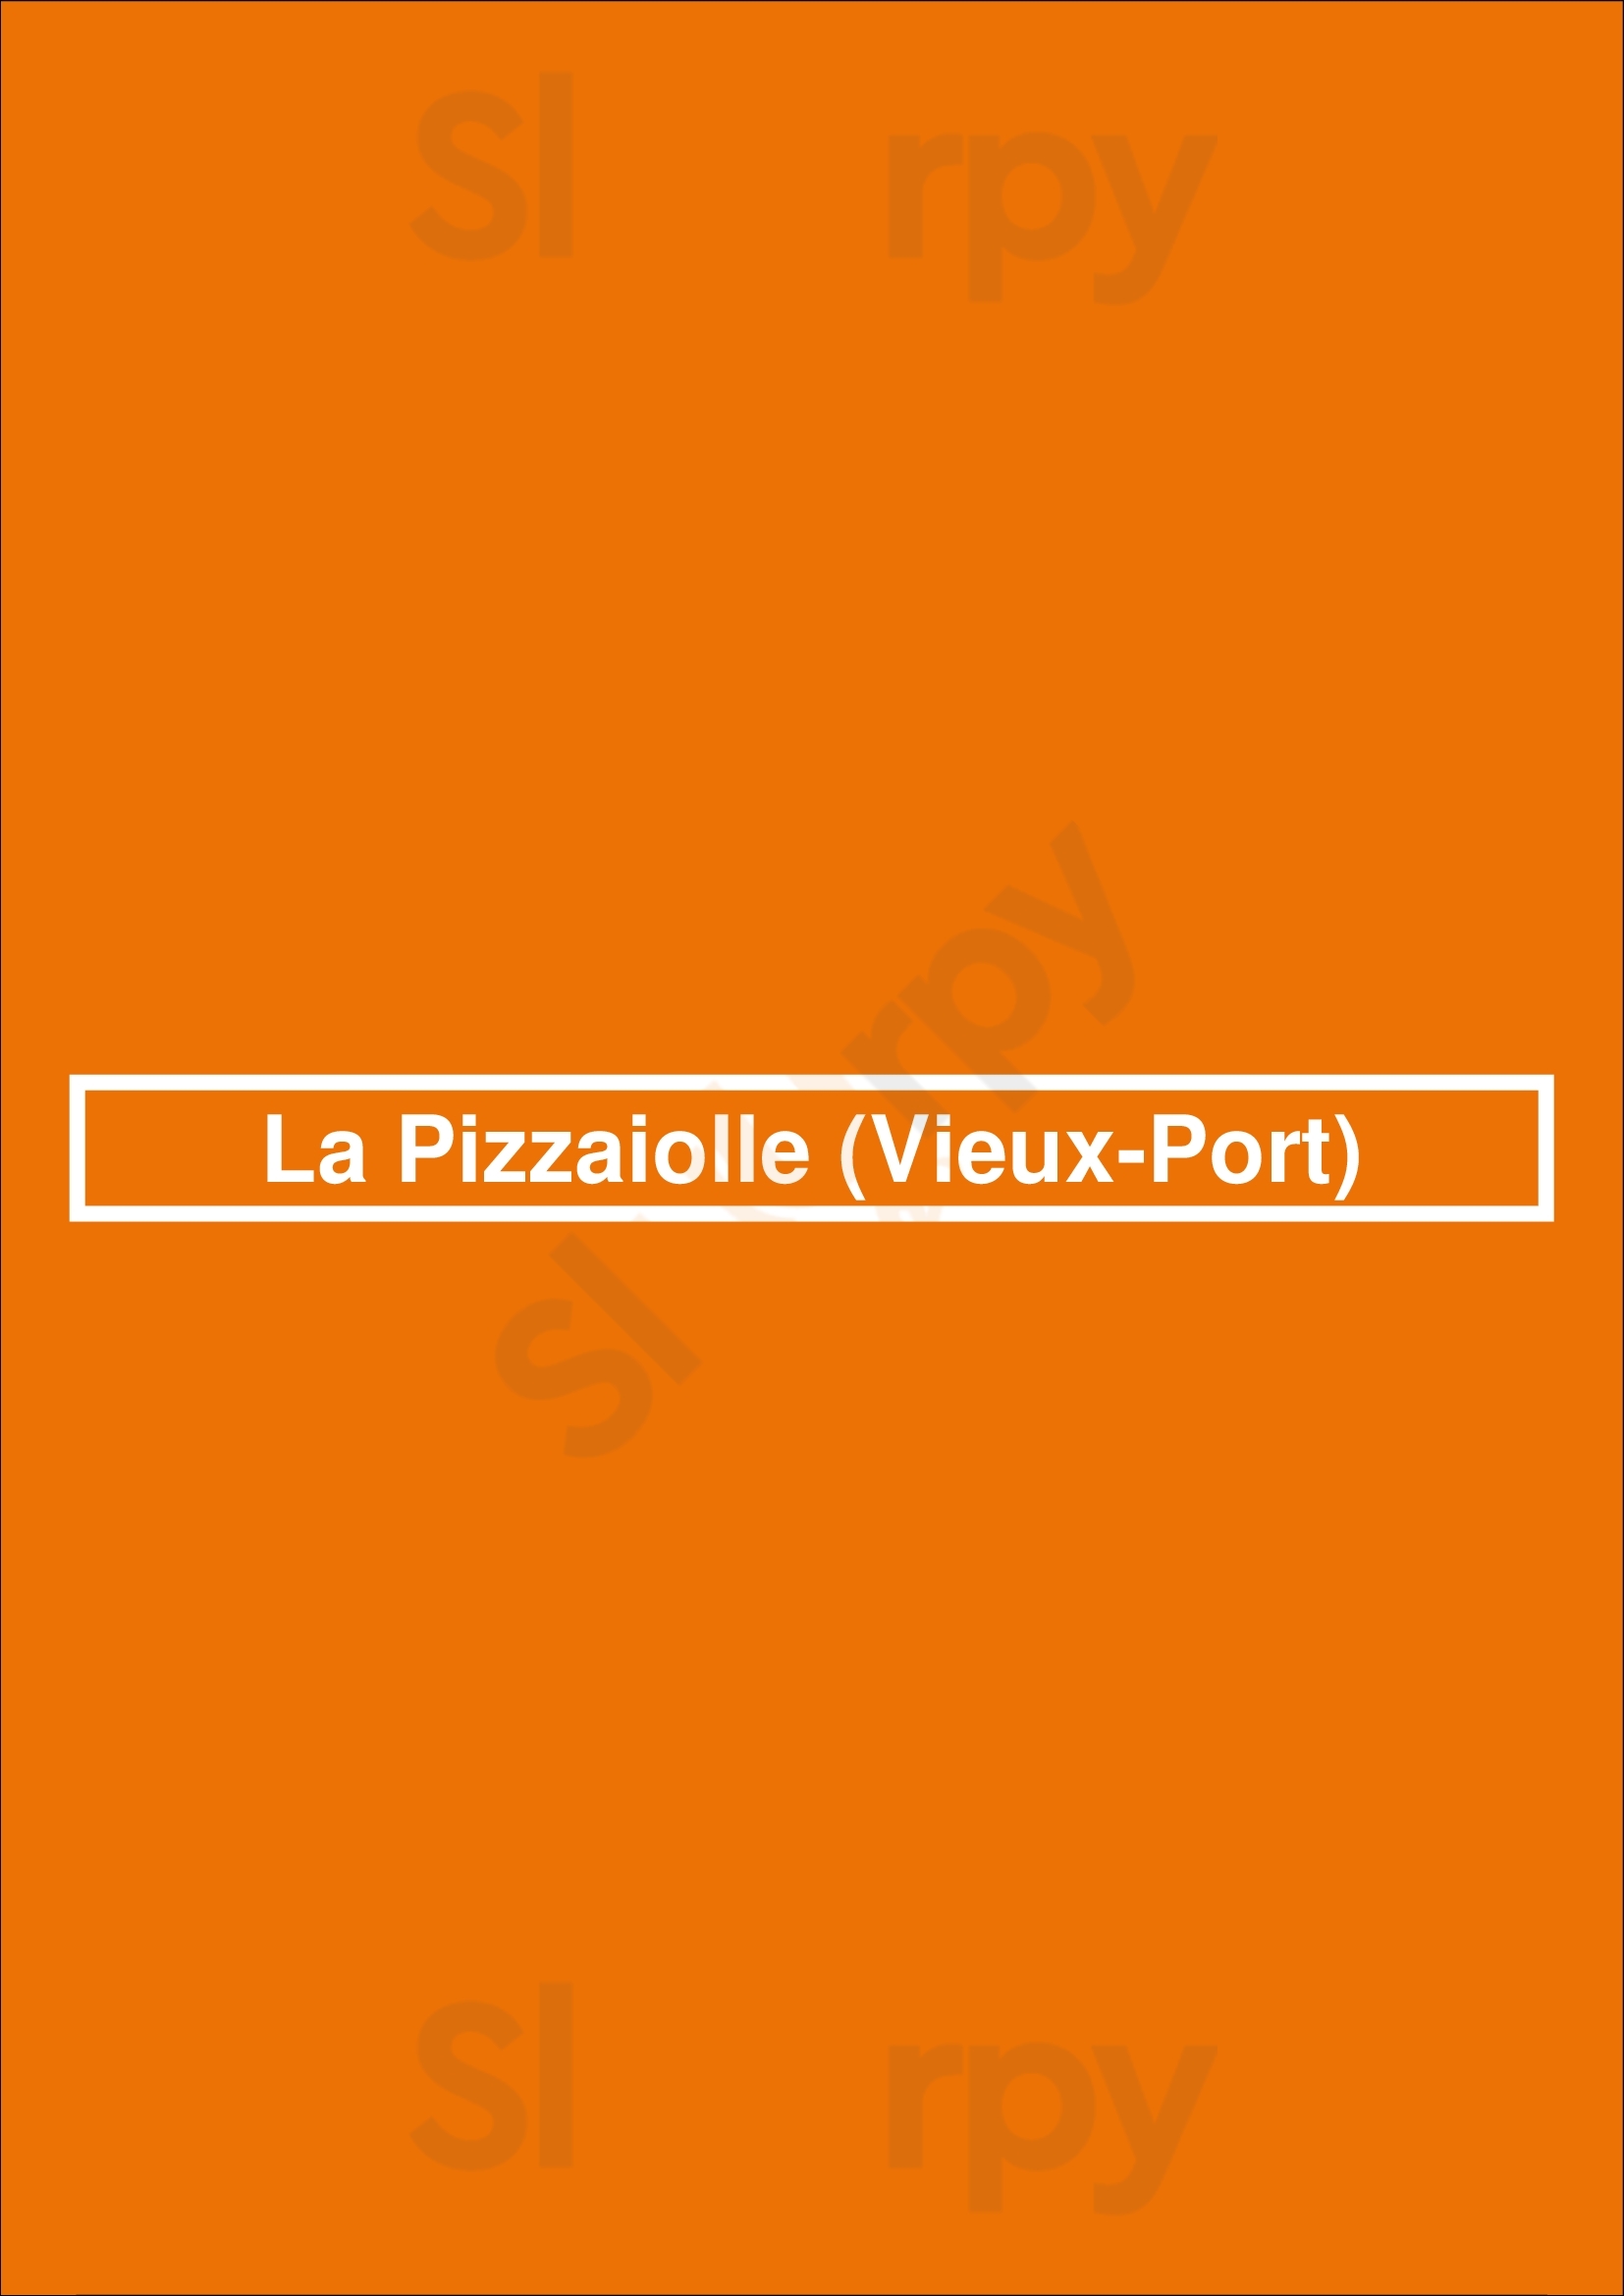 La Pizzaiolle (vieux-port) Montreal Menu - 1